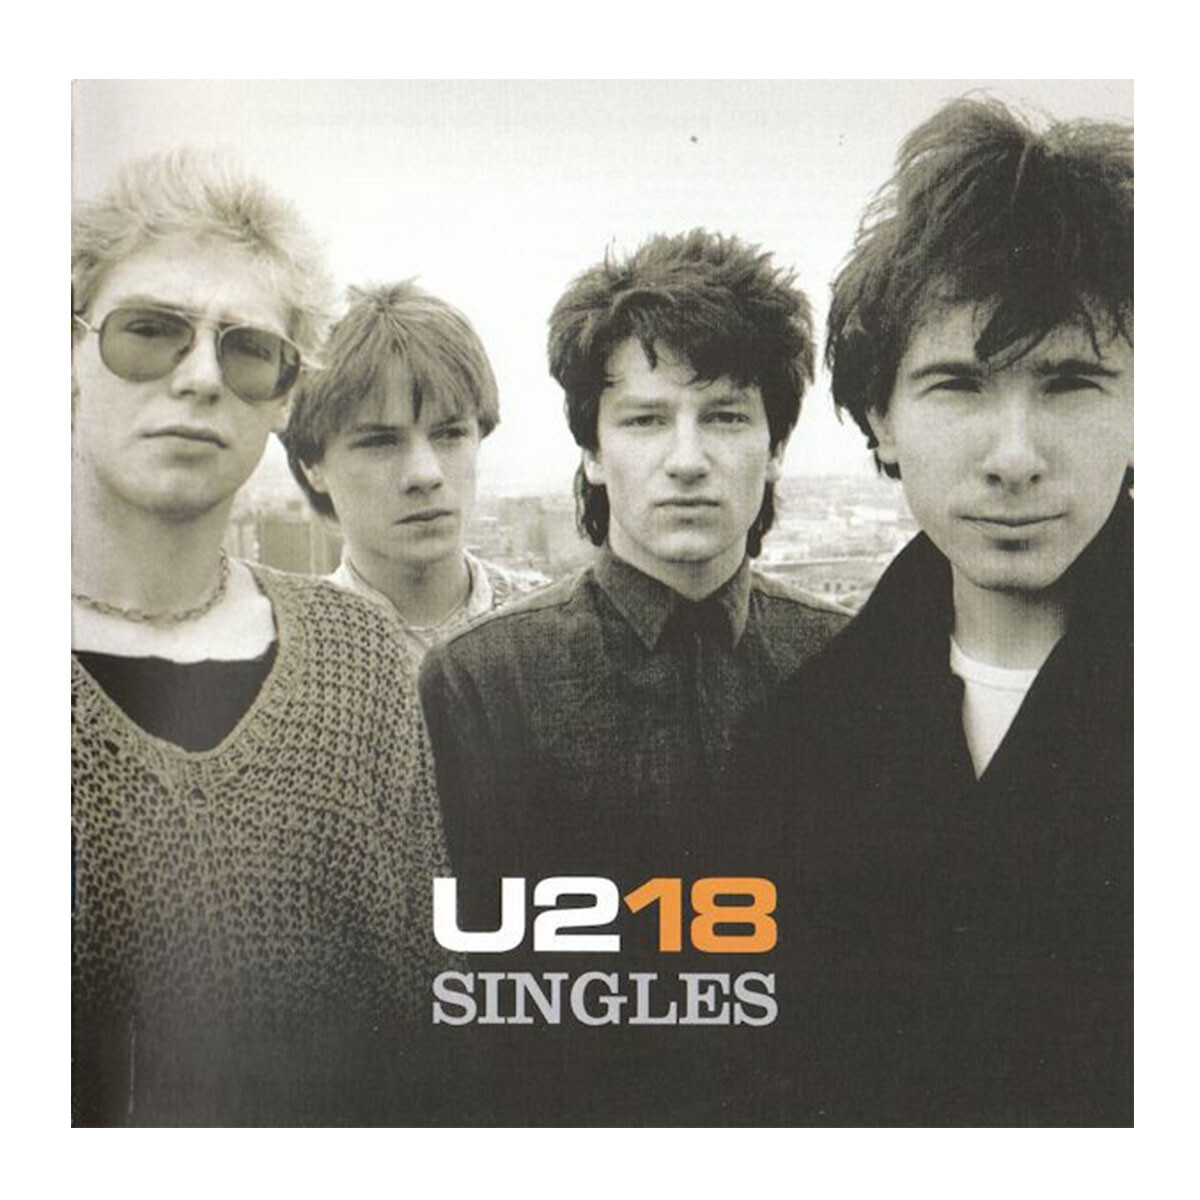 U2-18 Singles - Vinilo 